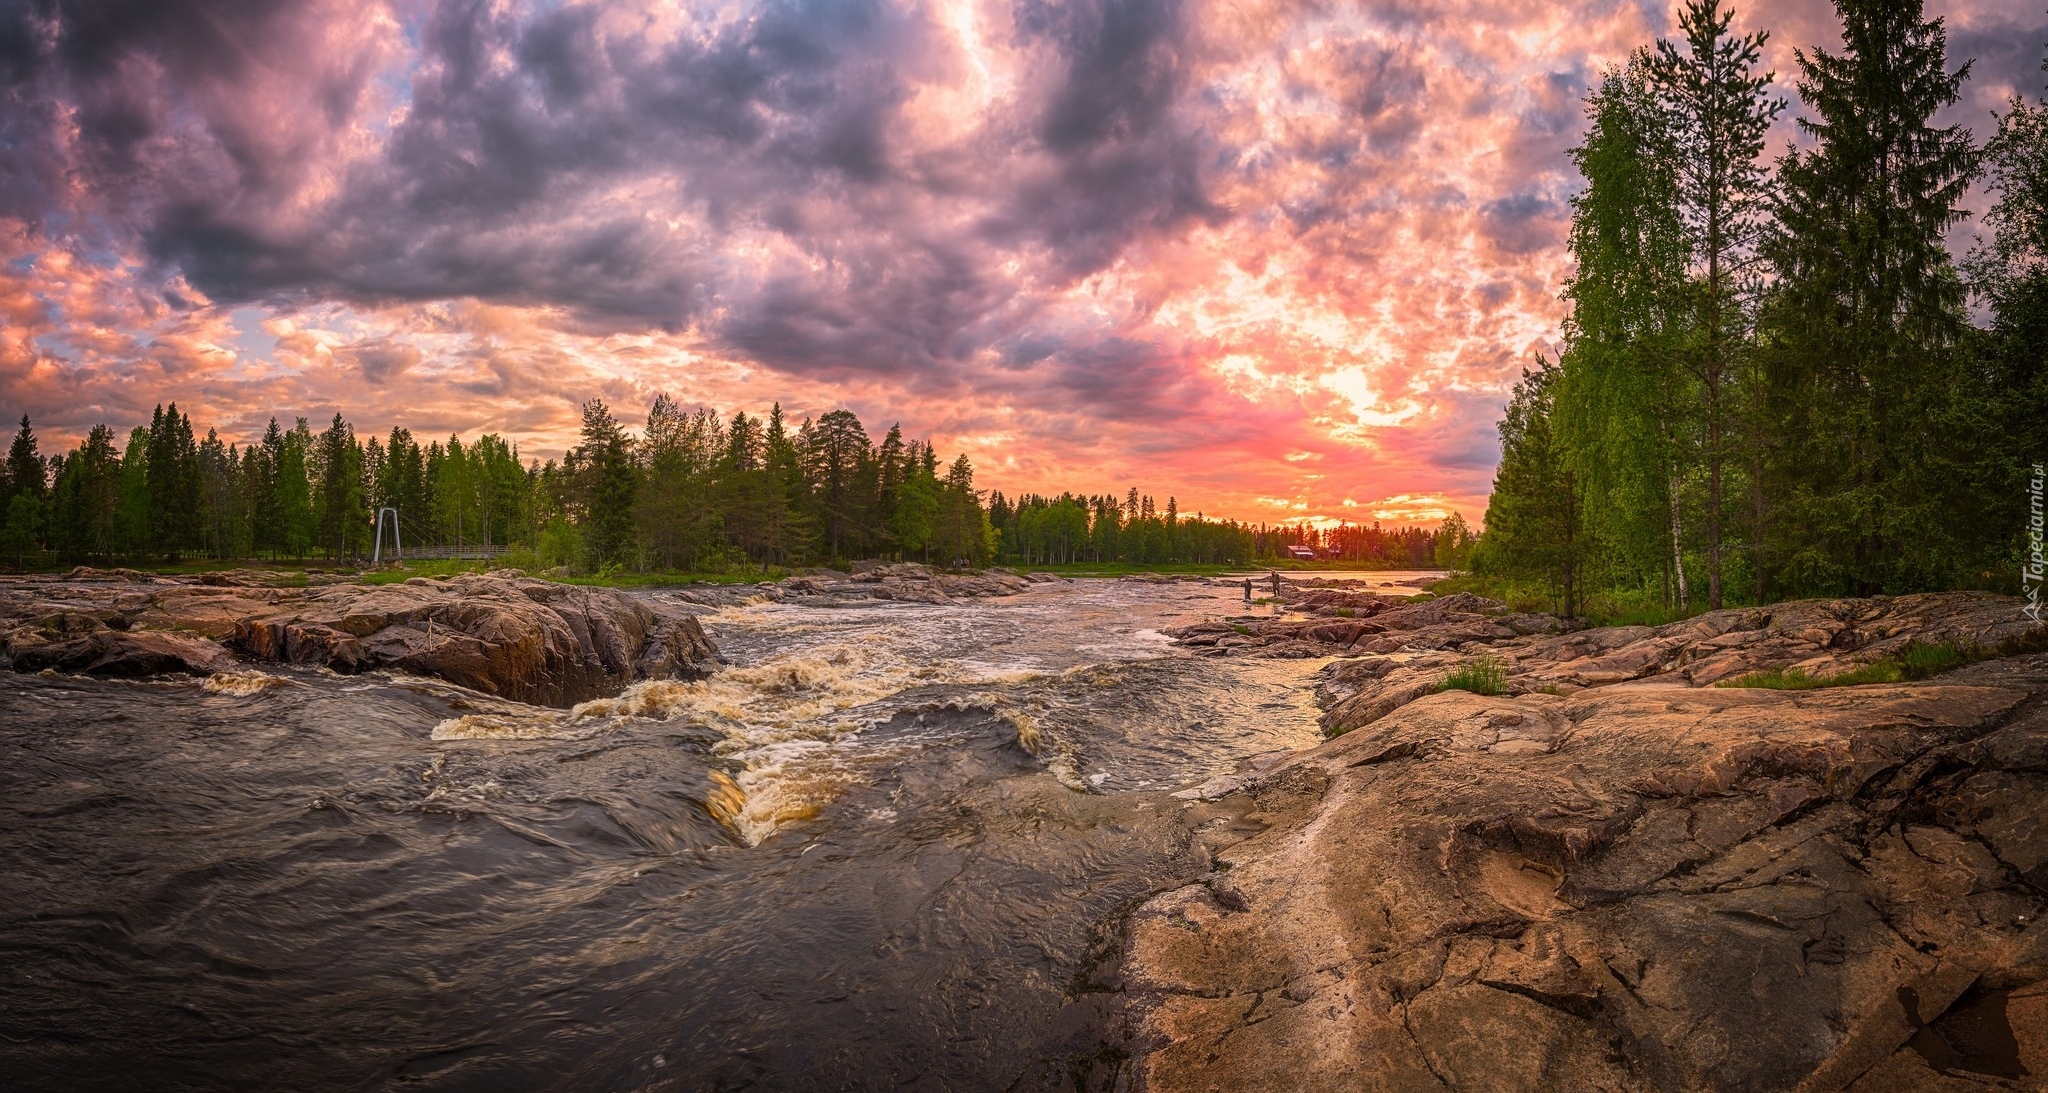 Finlandia, Prowincja Oulu, Gmina Kiiminki, Rzeka Kiiminkijoki, Skały, Drzewa, Chmury, Zachód słońca